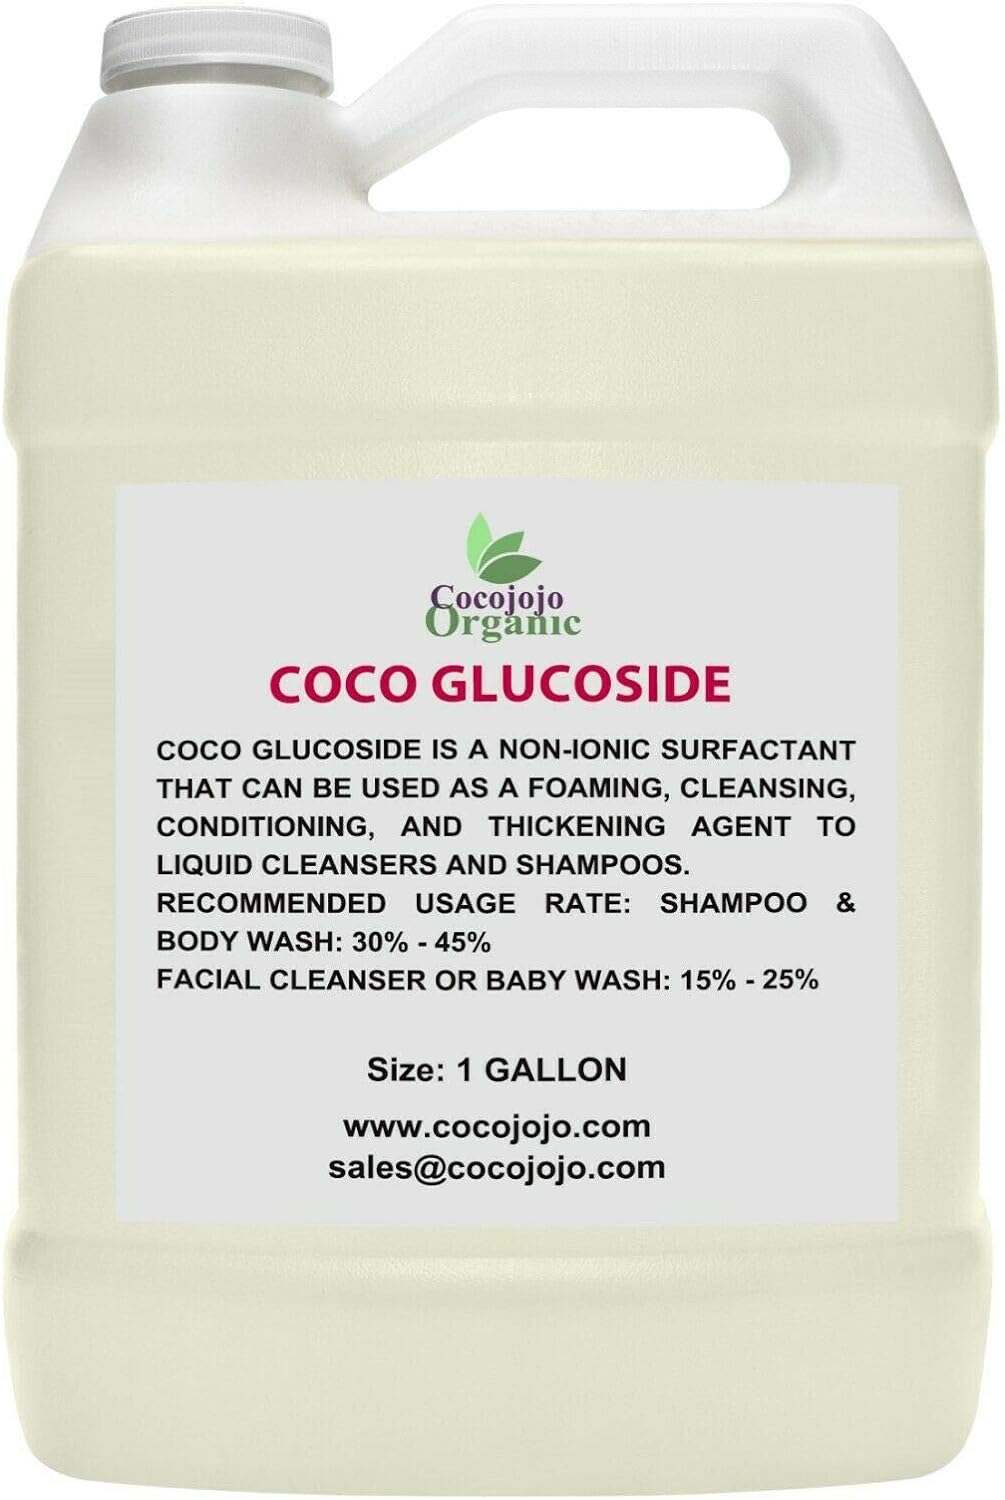 cocojojo - Coco Glucoside Surfactant - 1 Gallon